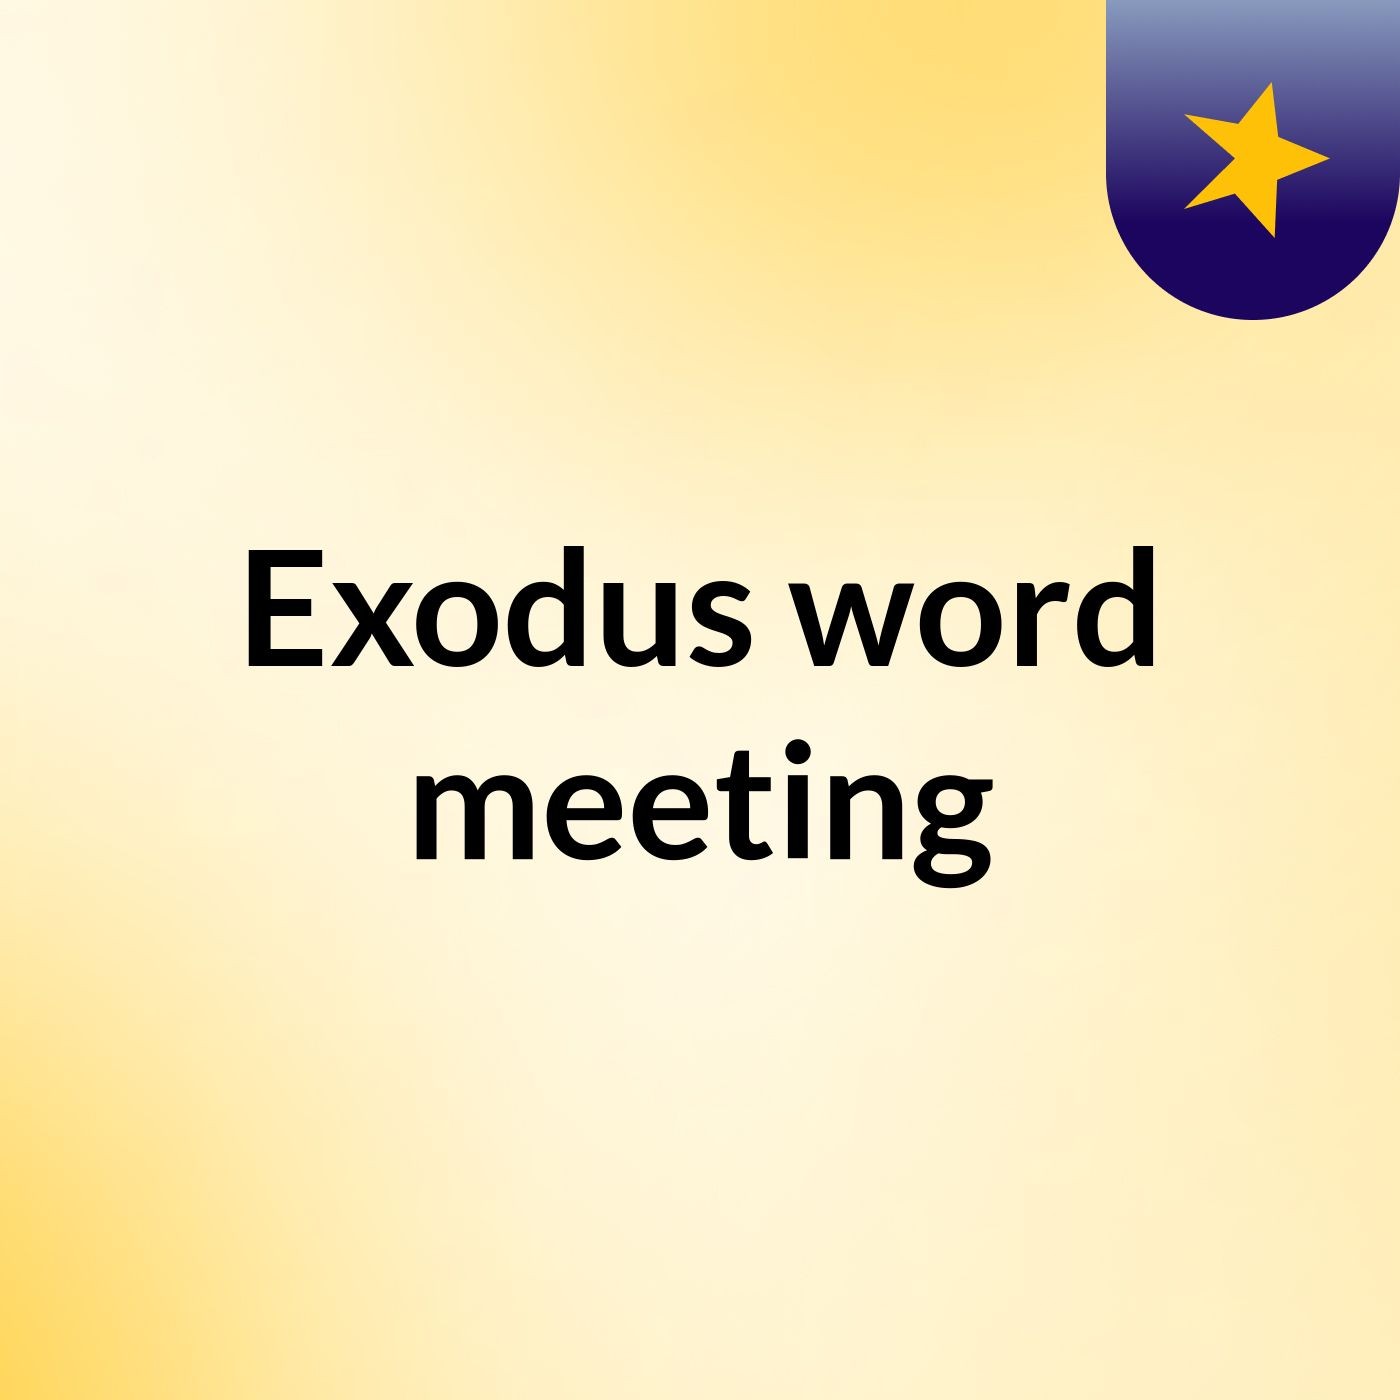 Exodus word meeting